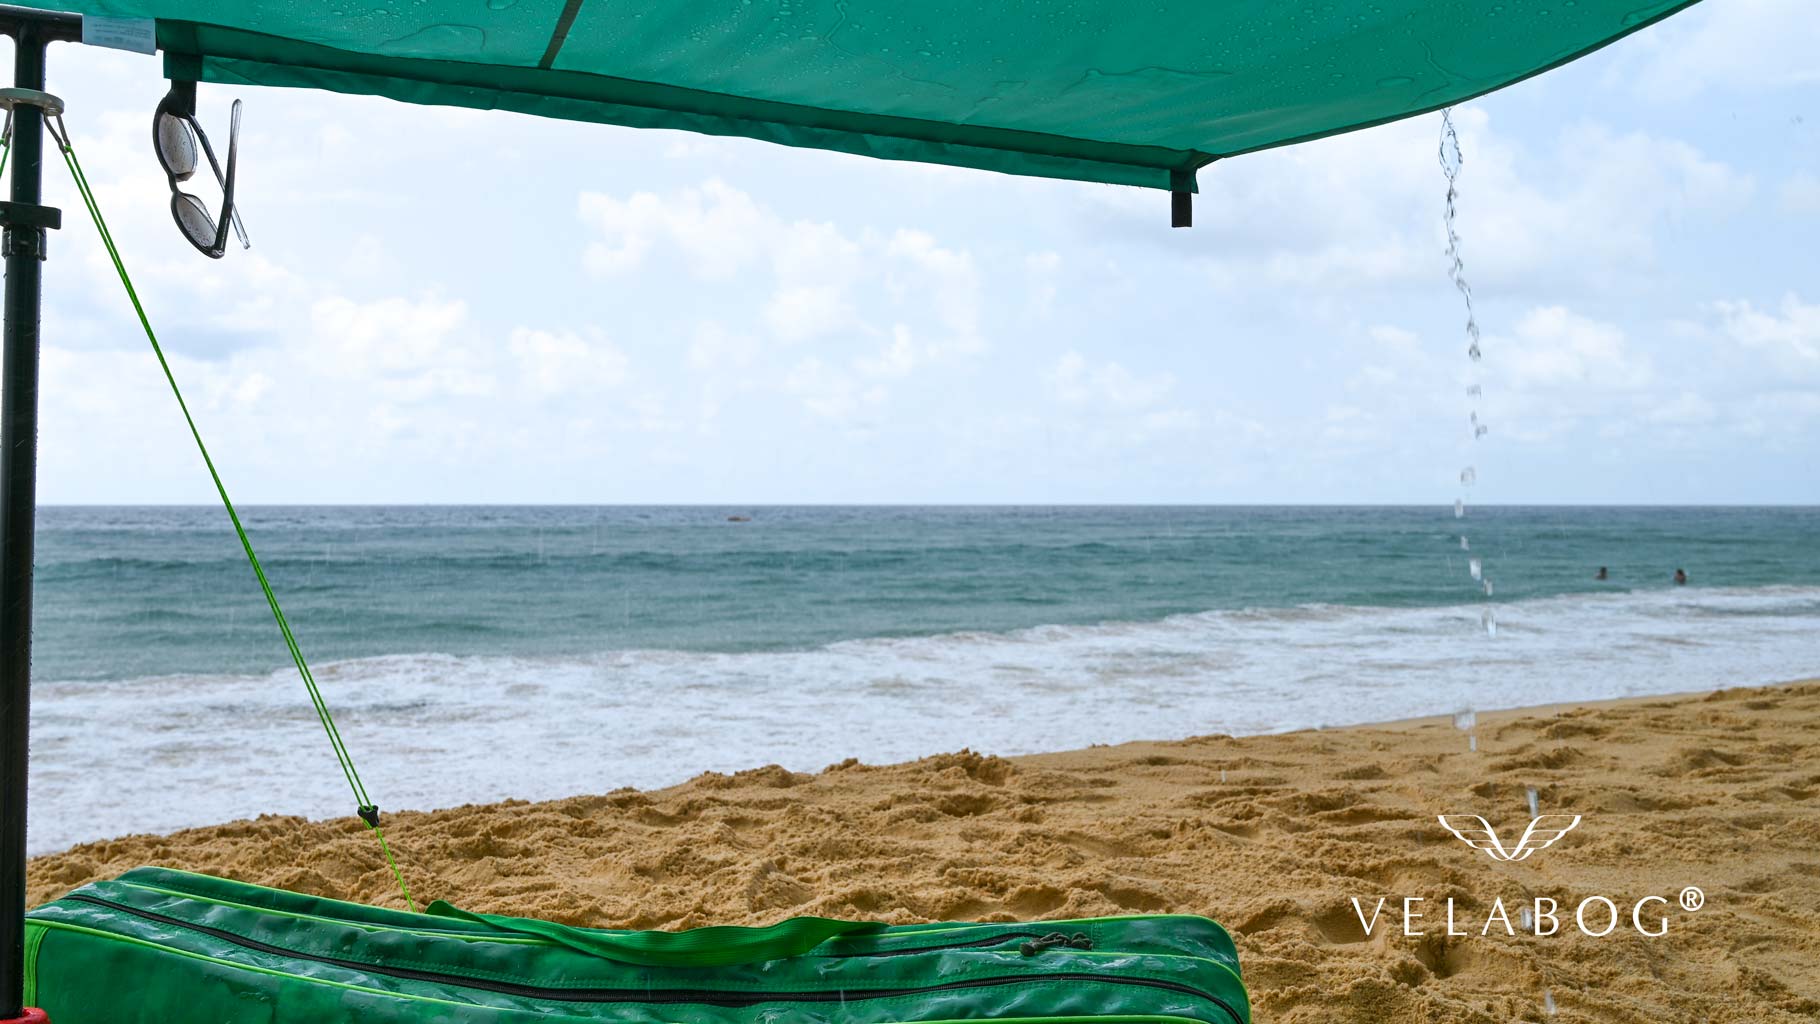 Żagiel słoneczny namiot plażowy Velabog Breeze na plaży chroni nawet przed krótkim deszczem. Najlepsze zadaszenie na plażę. Żagiel słoneczny, parasol plażowy i namiot plażowy w jednym. Masz więc wszystko, czego potrzebujesz, aby cieszyć się plażą bez obaw.